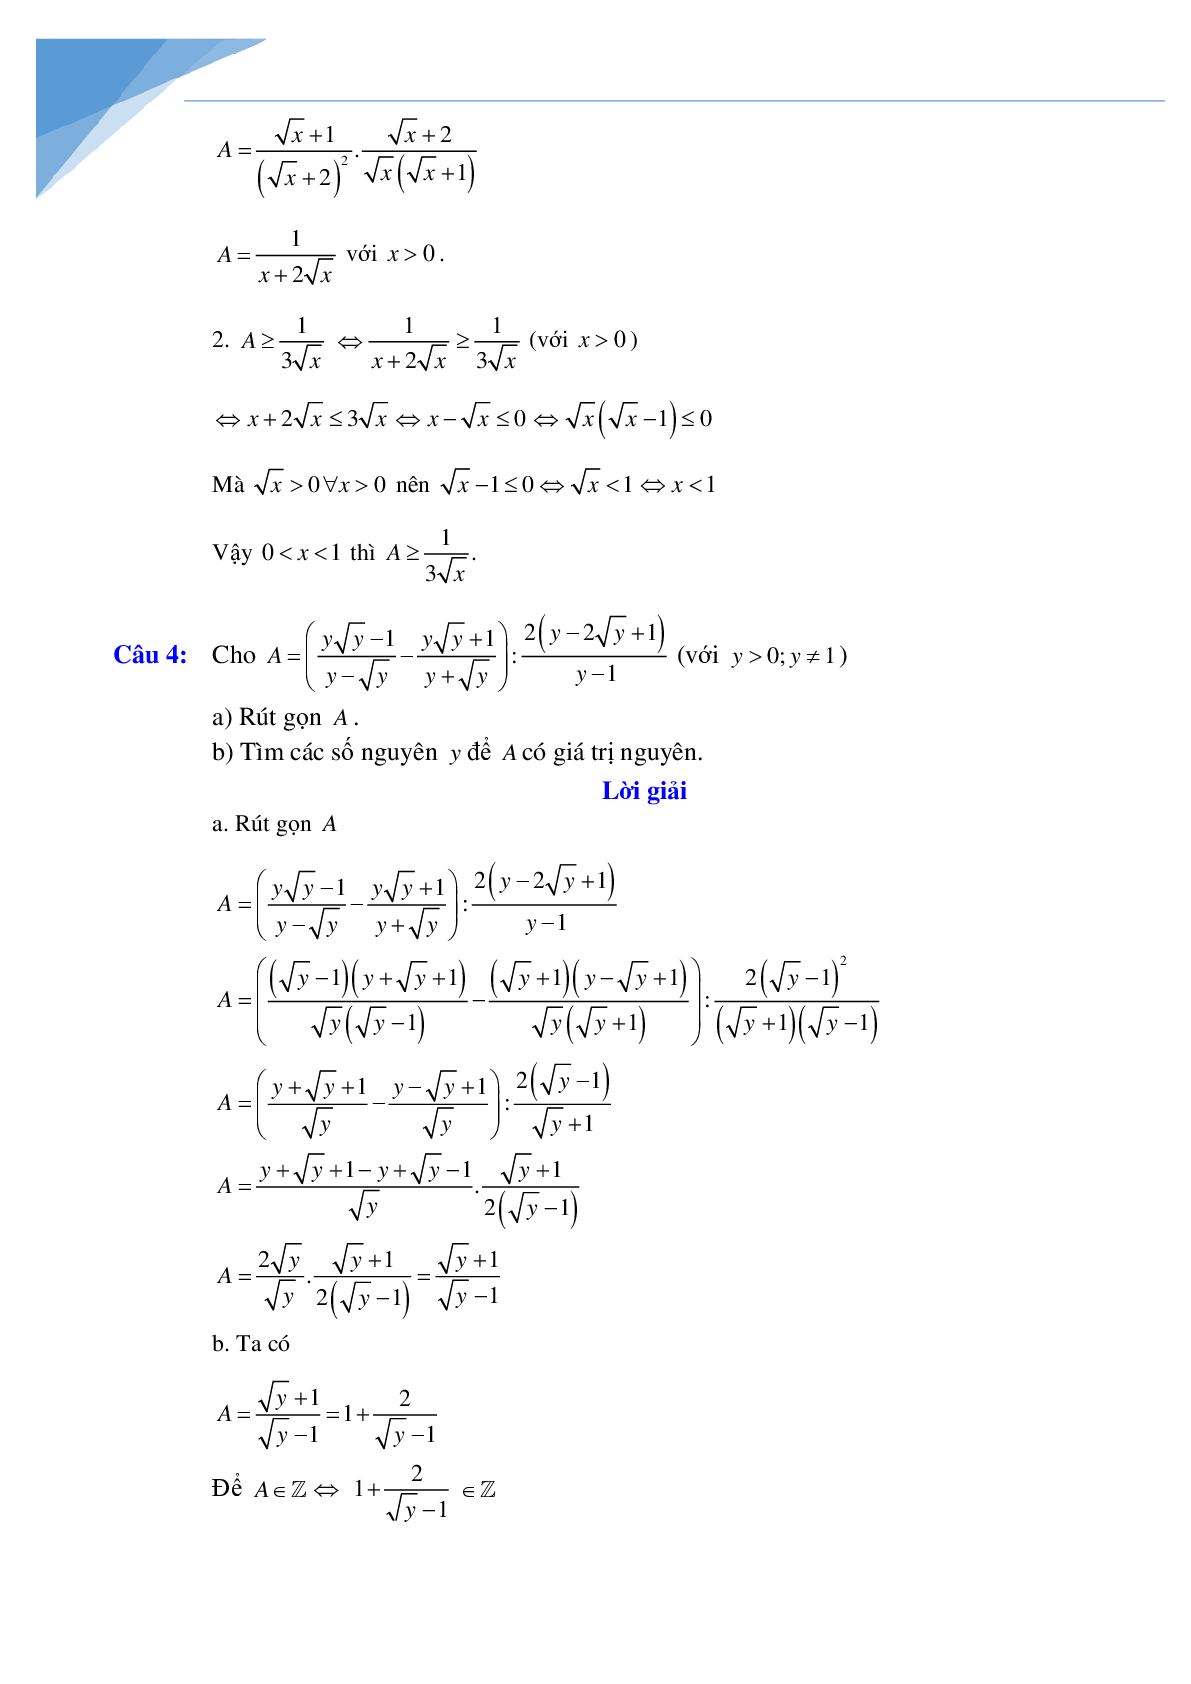 Rút gọn biểu thức và bài toán liên quan (trang 6)